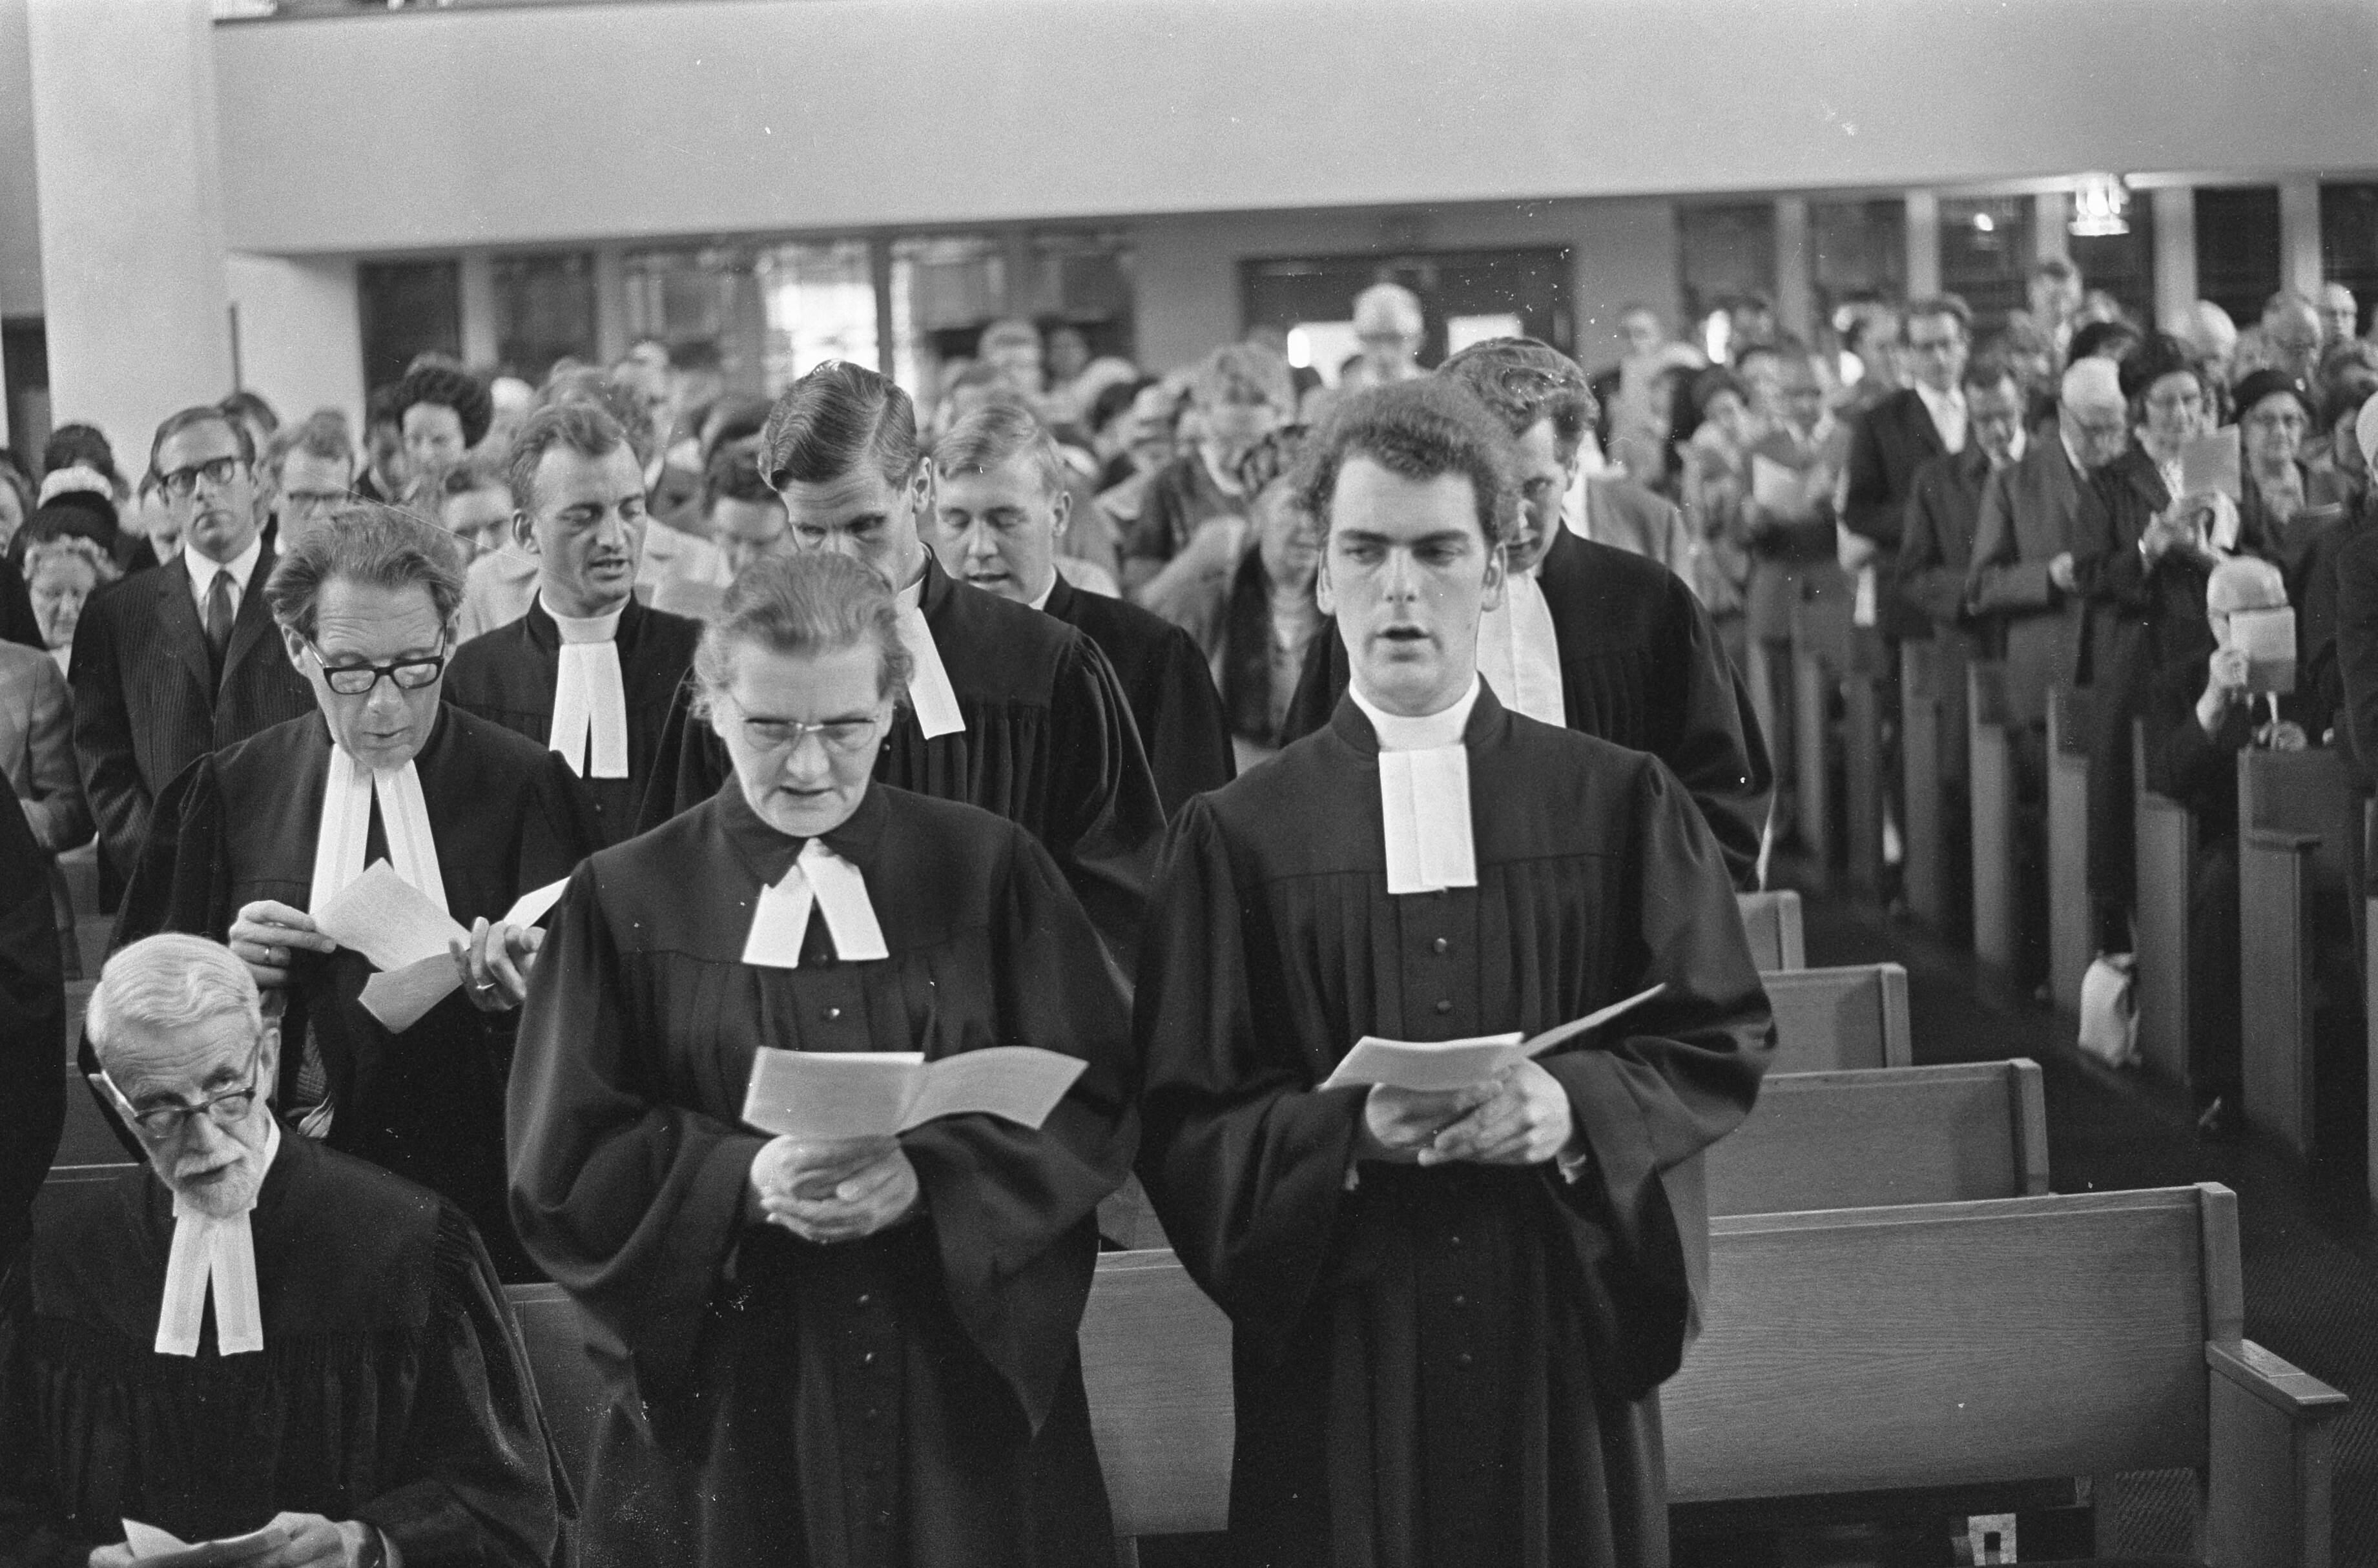 1967 - Moeder en zoon tegelijk tot predikant bevestigd, links mevrouw Mara Mostert Schencklaar en rechts zoon Gerard Johan Mostert